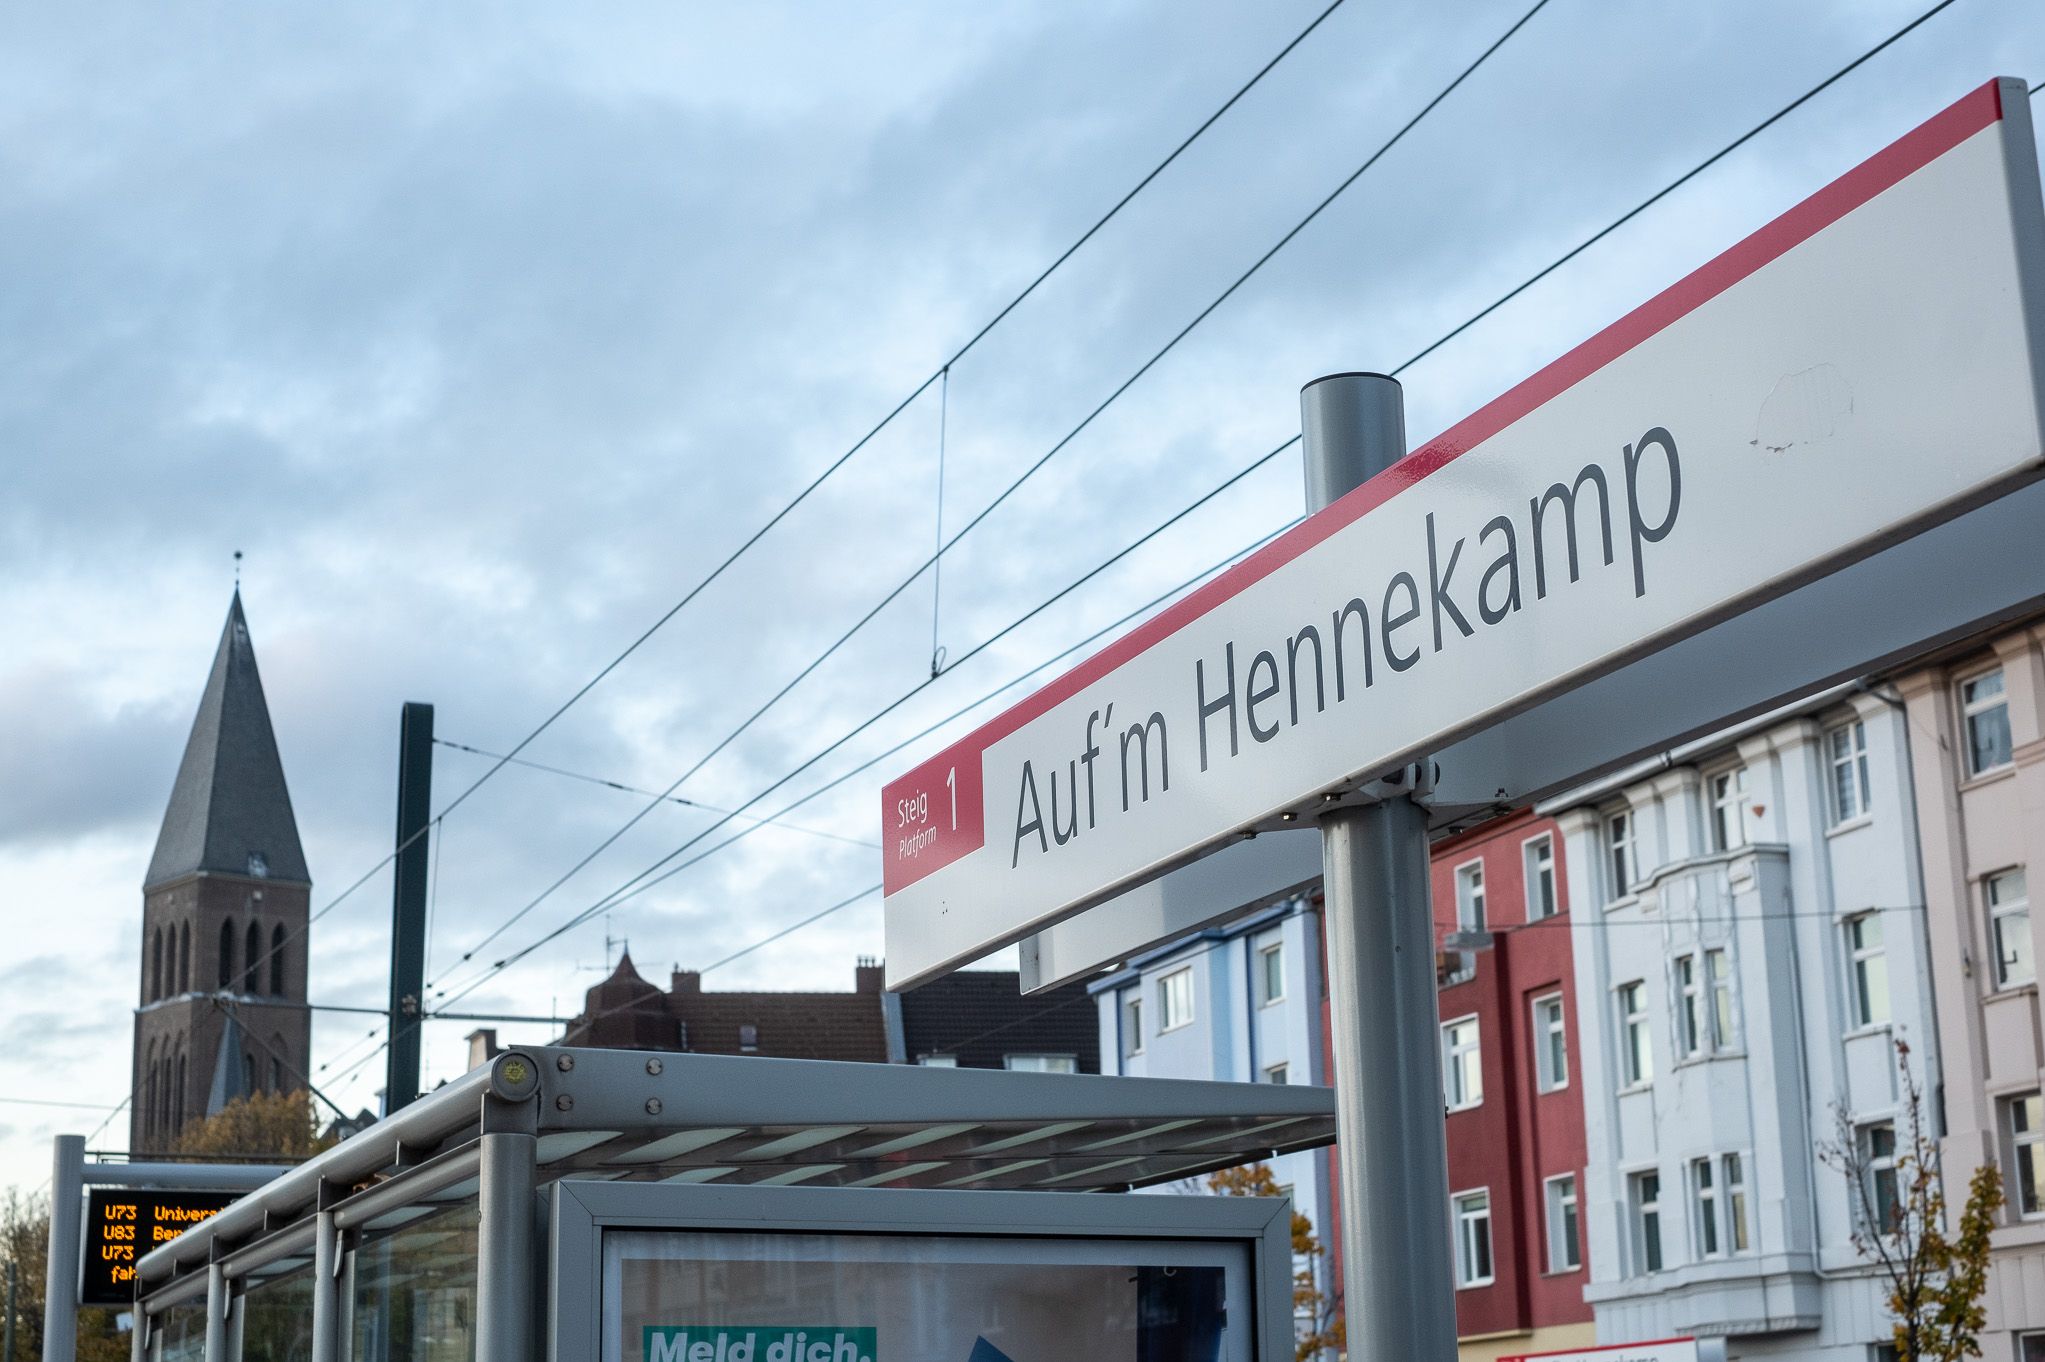 Die Mobilitätsstation Auf'm Hennekamp zeichnet sich durch eine gute ÖPNV-Anbindung - hier im Bild - und ein umfangreiches Carsharing-Angebot aus © Connected Mobility Düsseldorf 